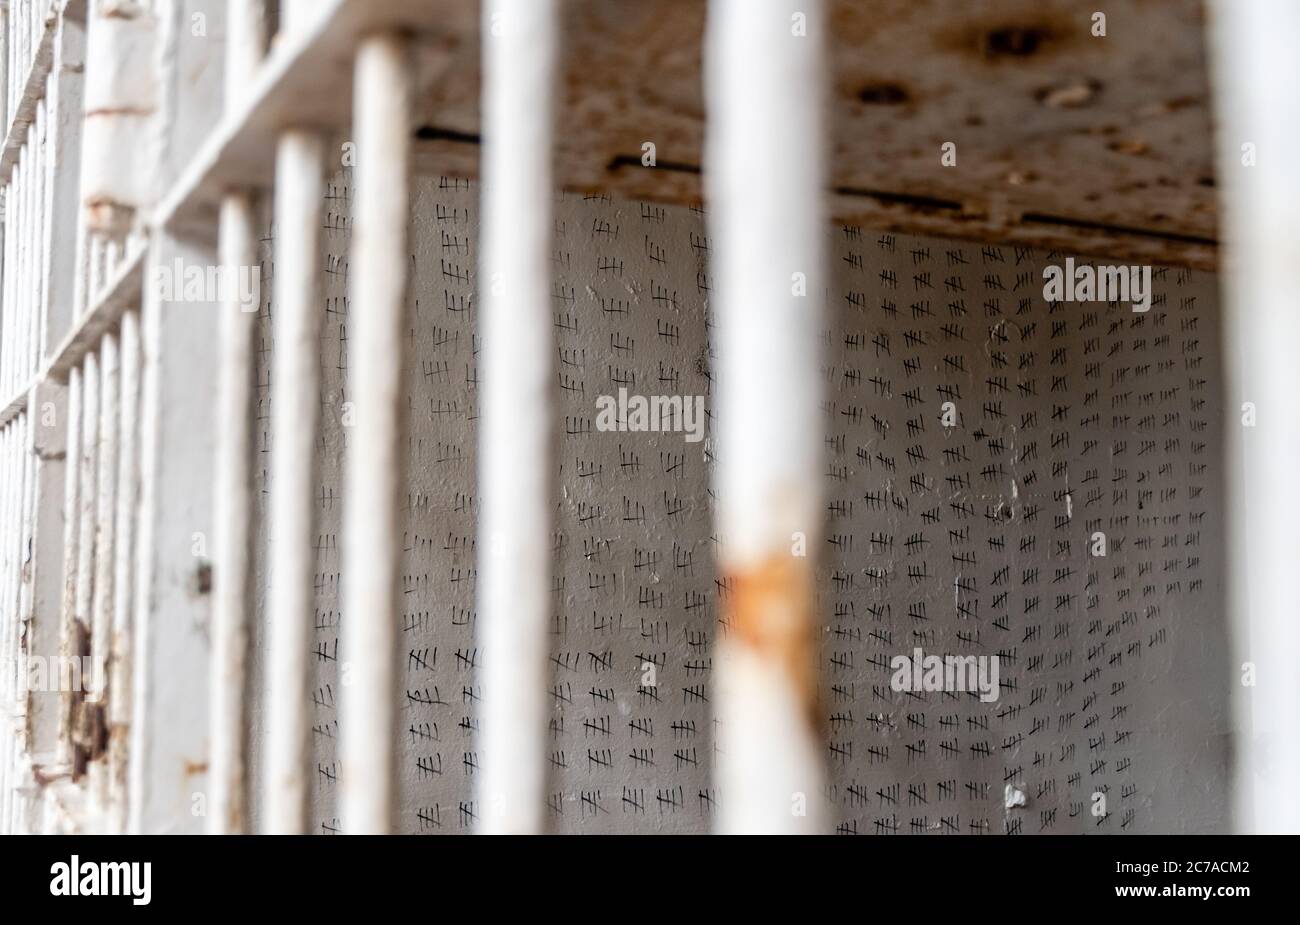 Pinselhaft Bergstaat Strafanstalt Hash Markierungen/Schläge auf Wand der Zelle im Tennessee Gefängnis Stockfoto